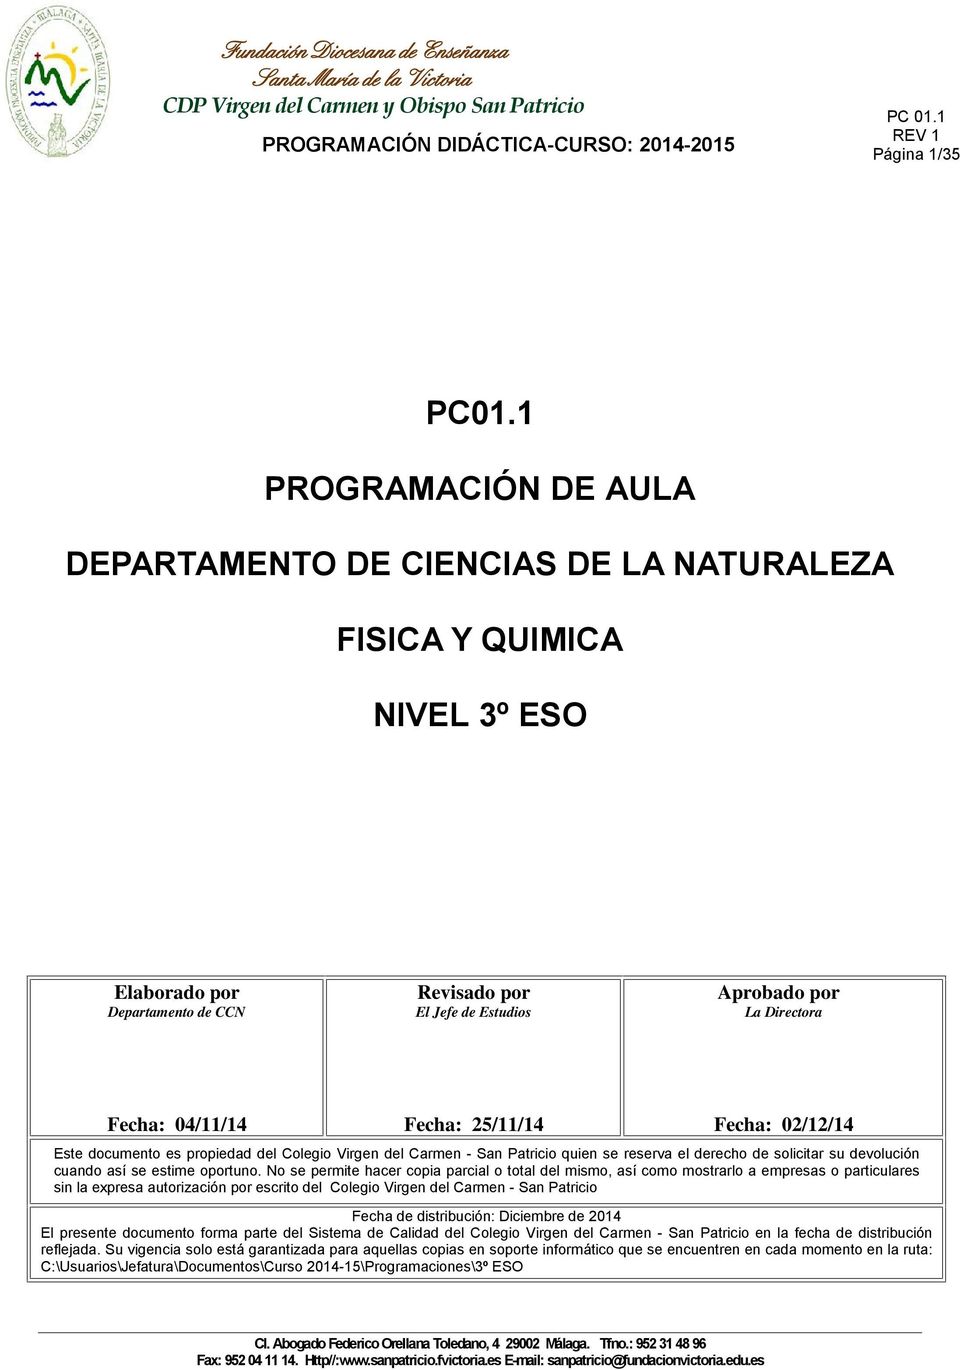 Fecha: 02/12/14 Este documento es propiedad del Colegio Virgen del Carmen - San Patricio quien se reserva el derecho de solicitar su devolución cuando así se estime oportuno.